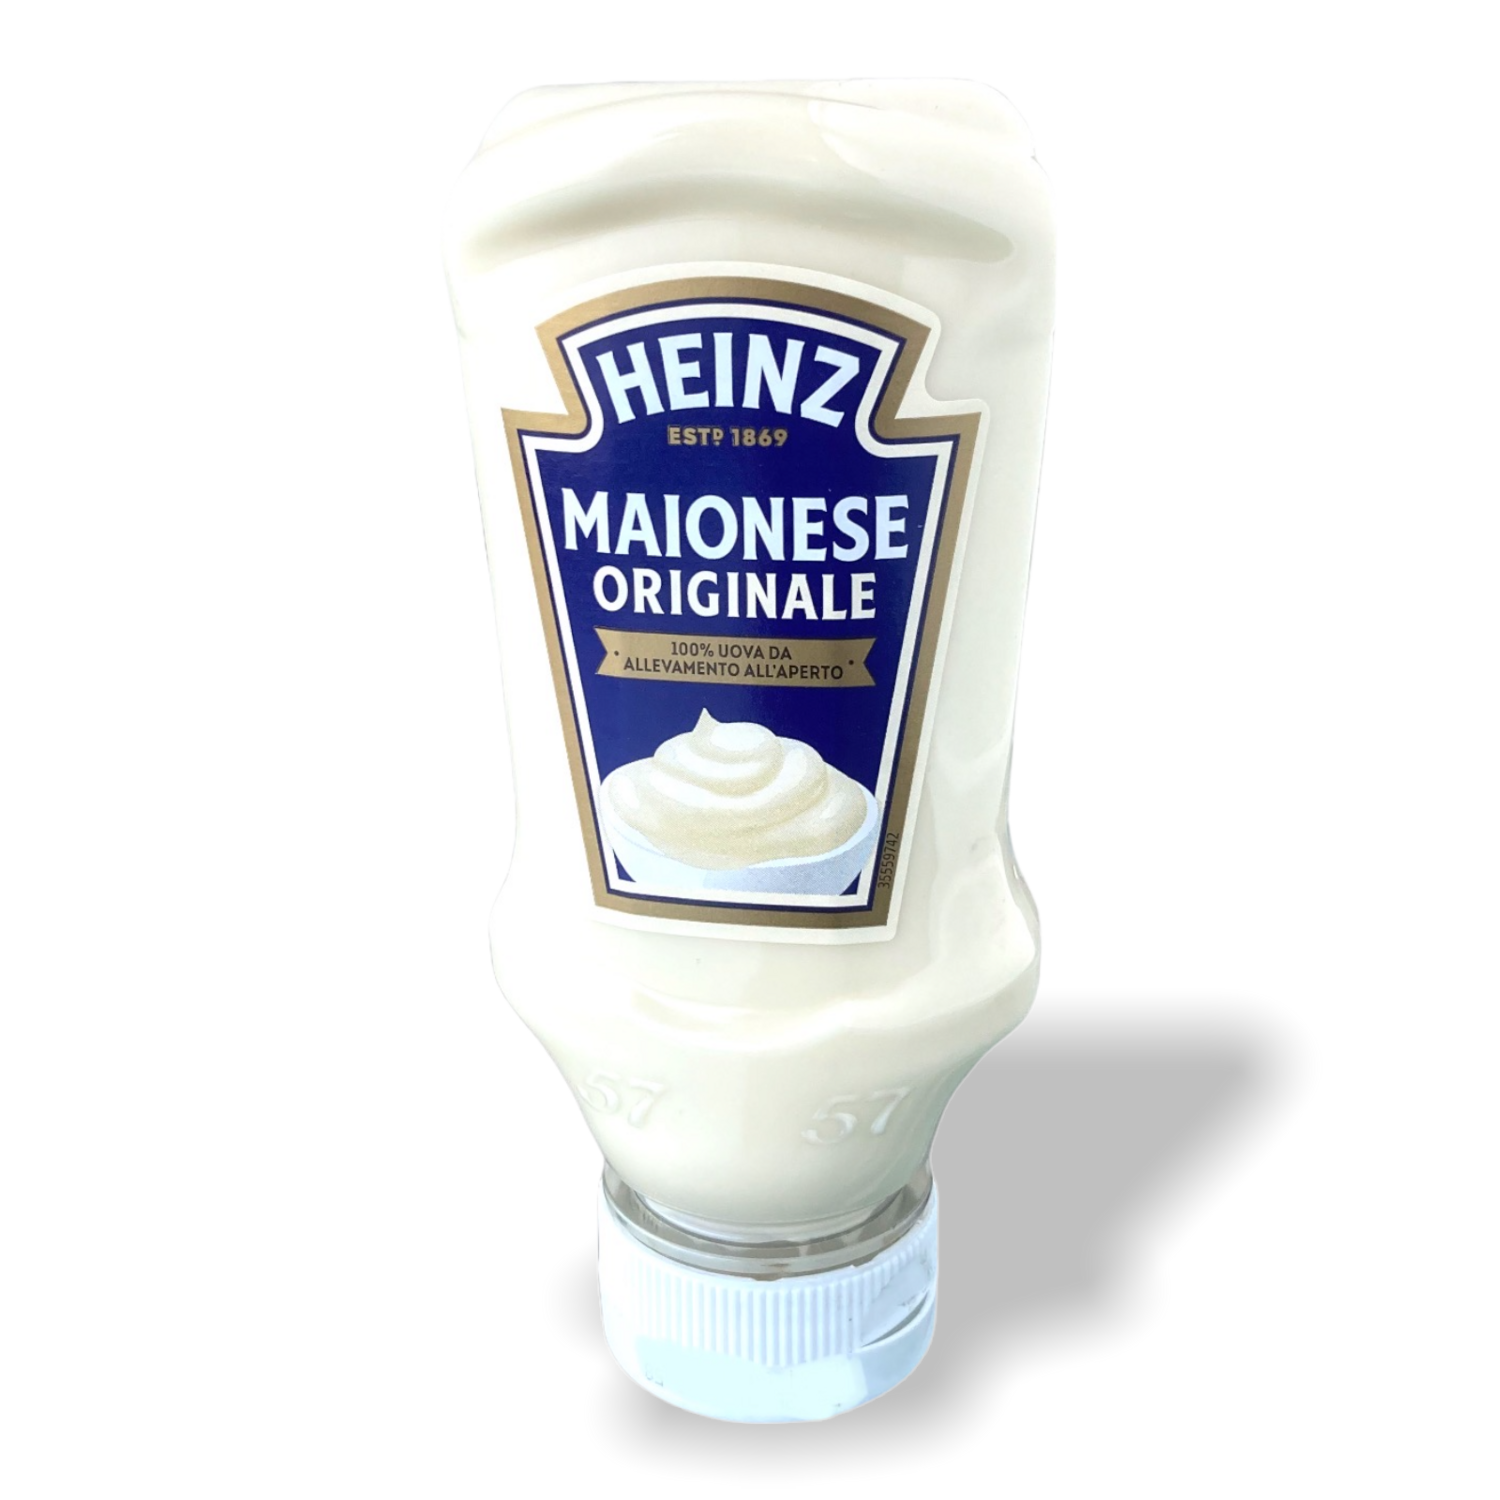 Heinz Maionese Originale 215g -220 ml.